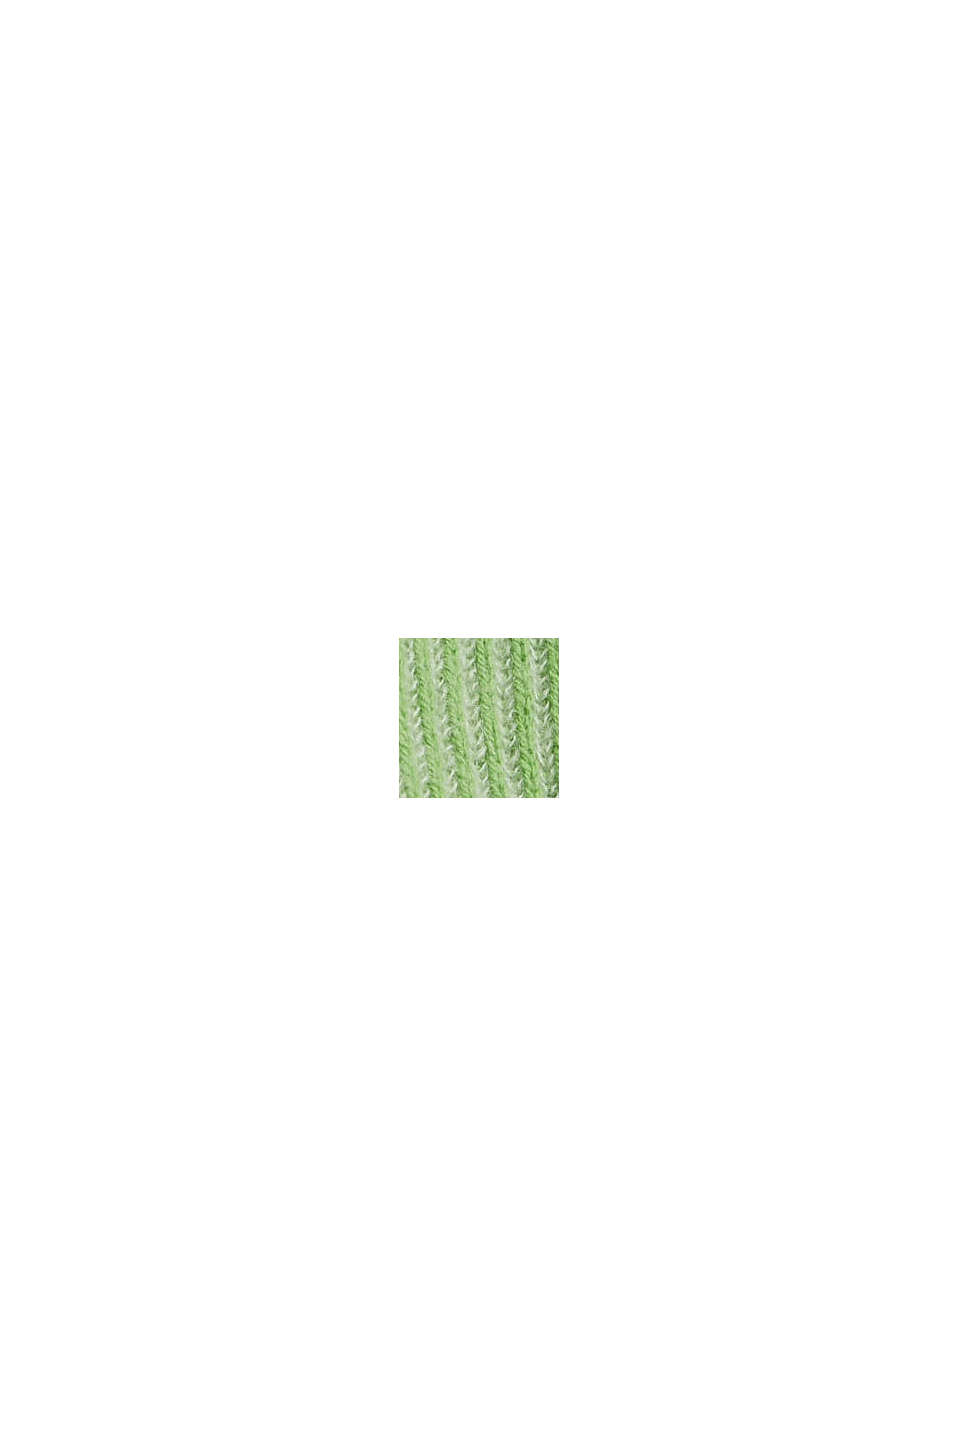 Pulovr z žebrované pleteniny, ze směsi s vlnou a alpakou, GREEN, swatch